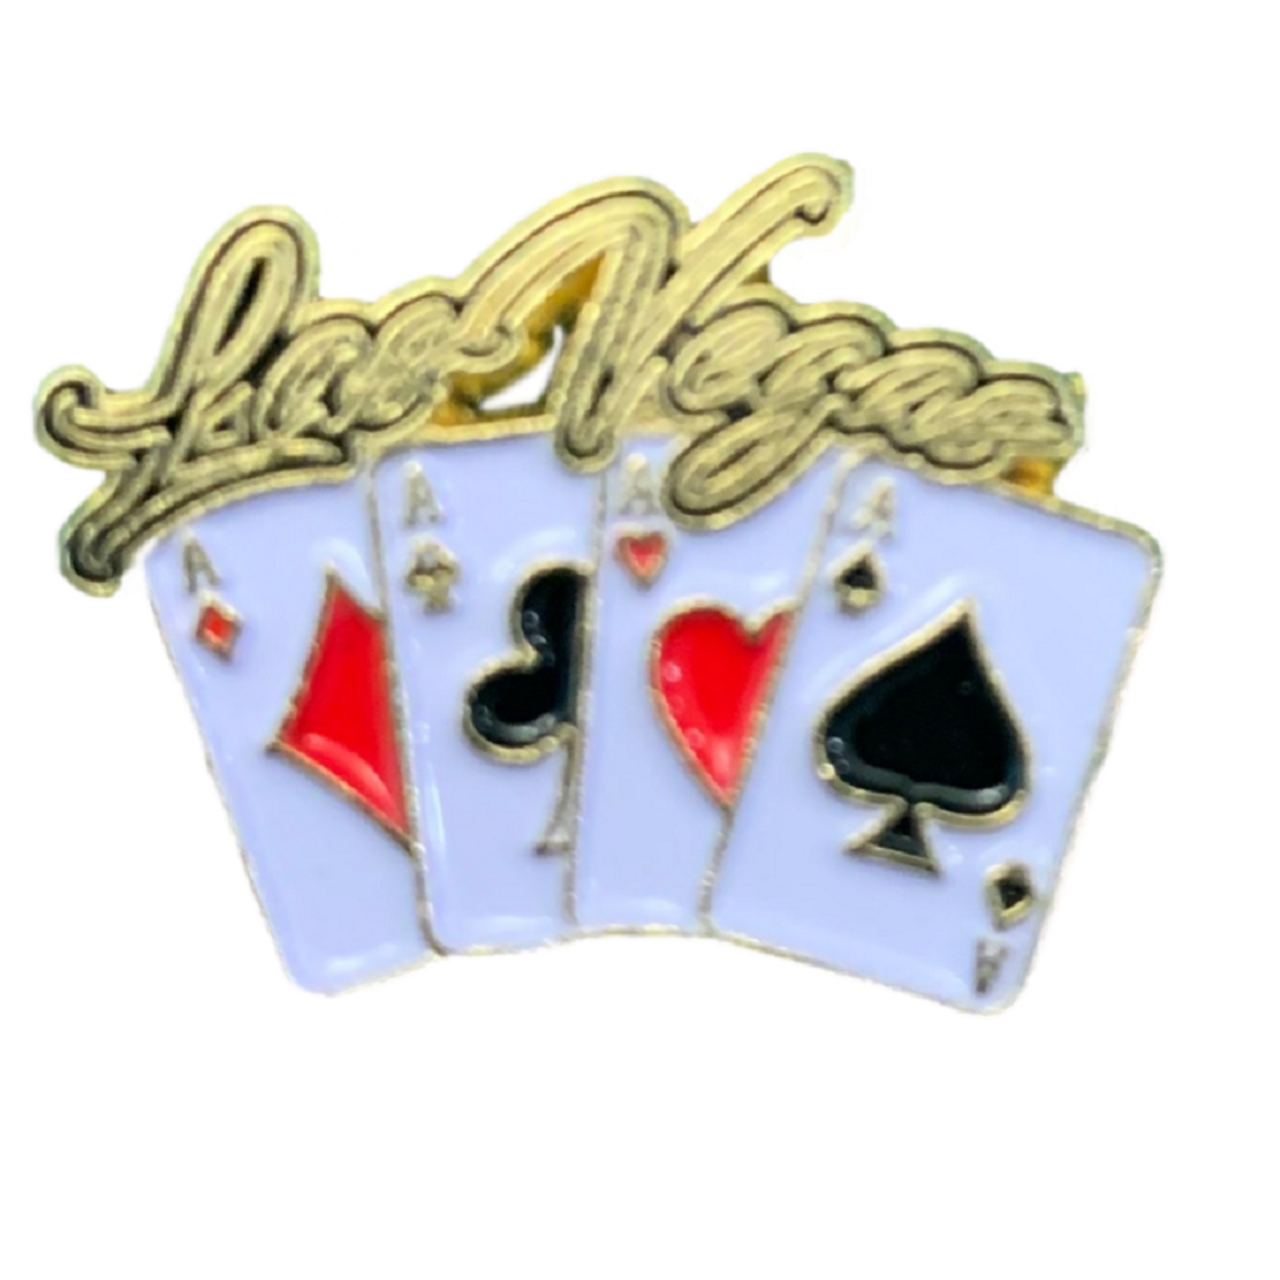 LV Logo Lapel Pin